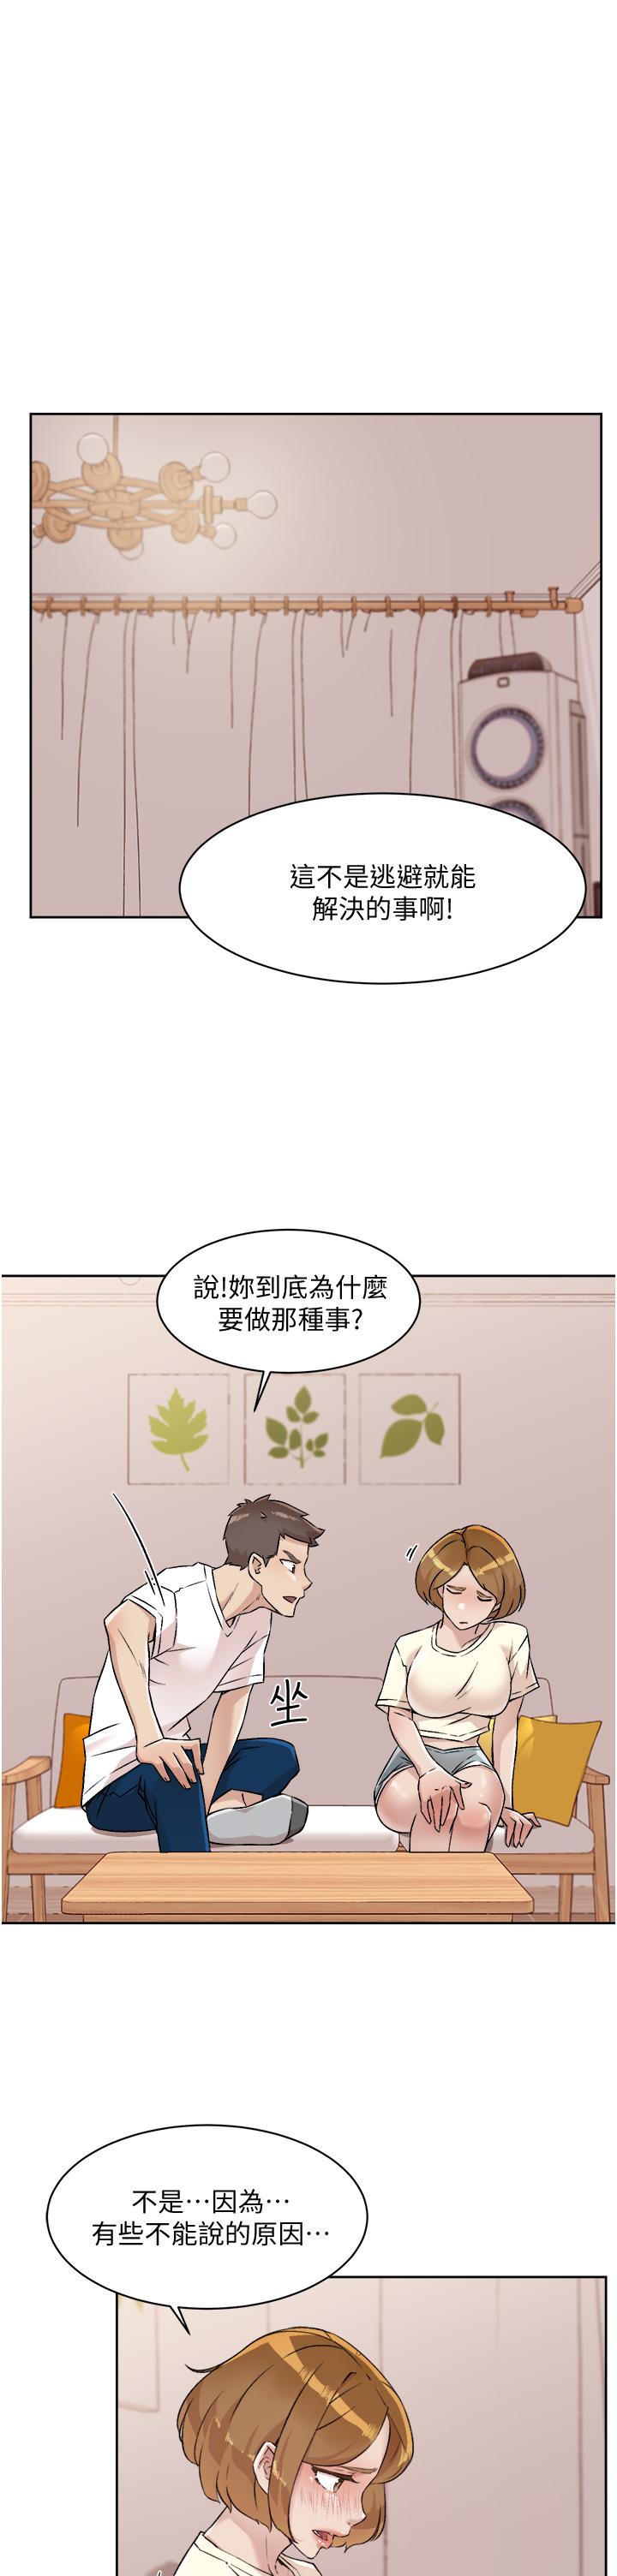 《好友的私生活》漫画 第53话-炮友关係曝光